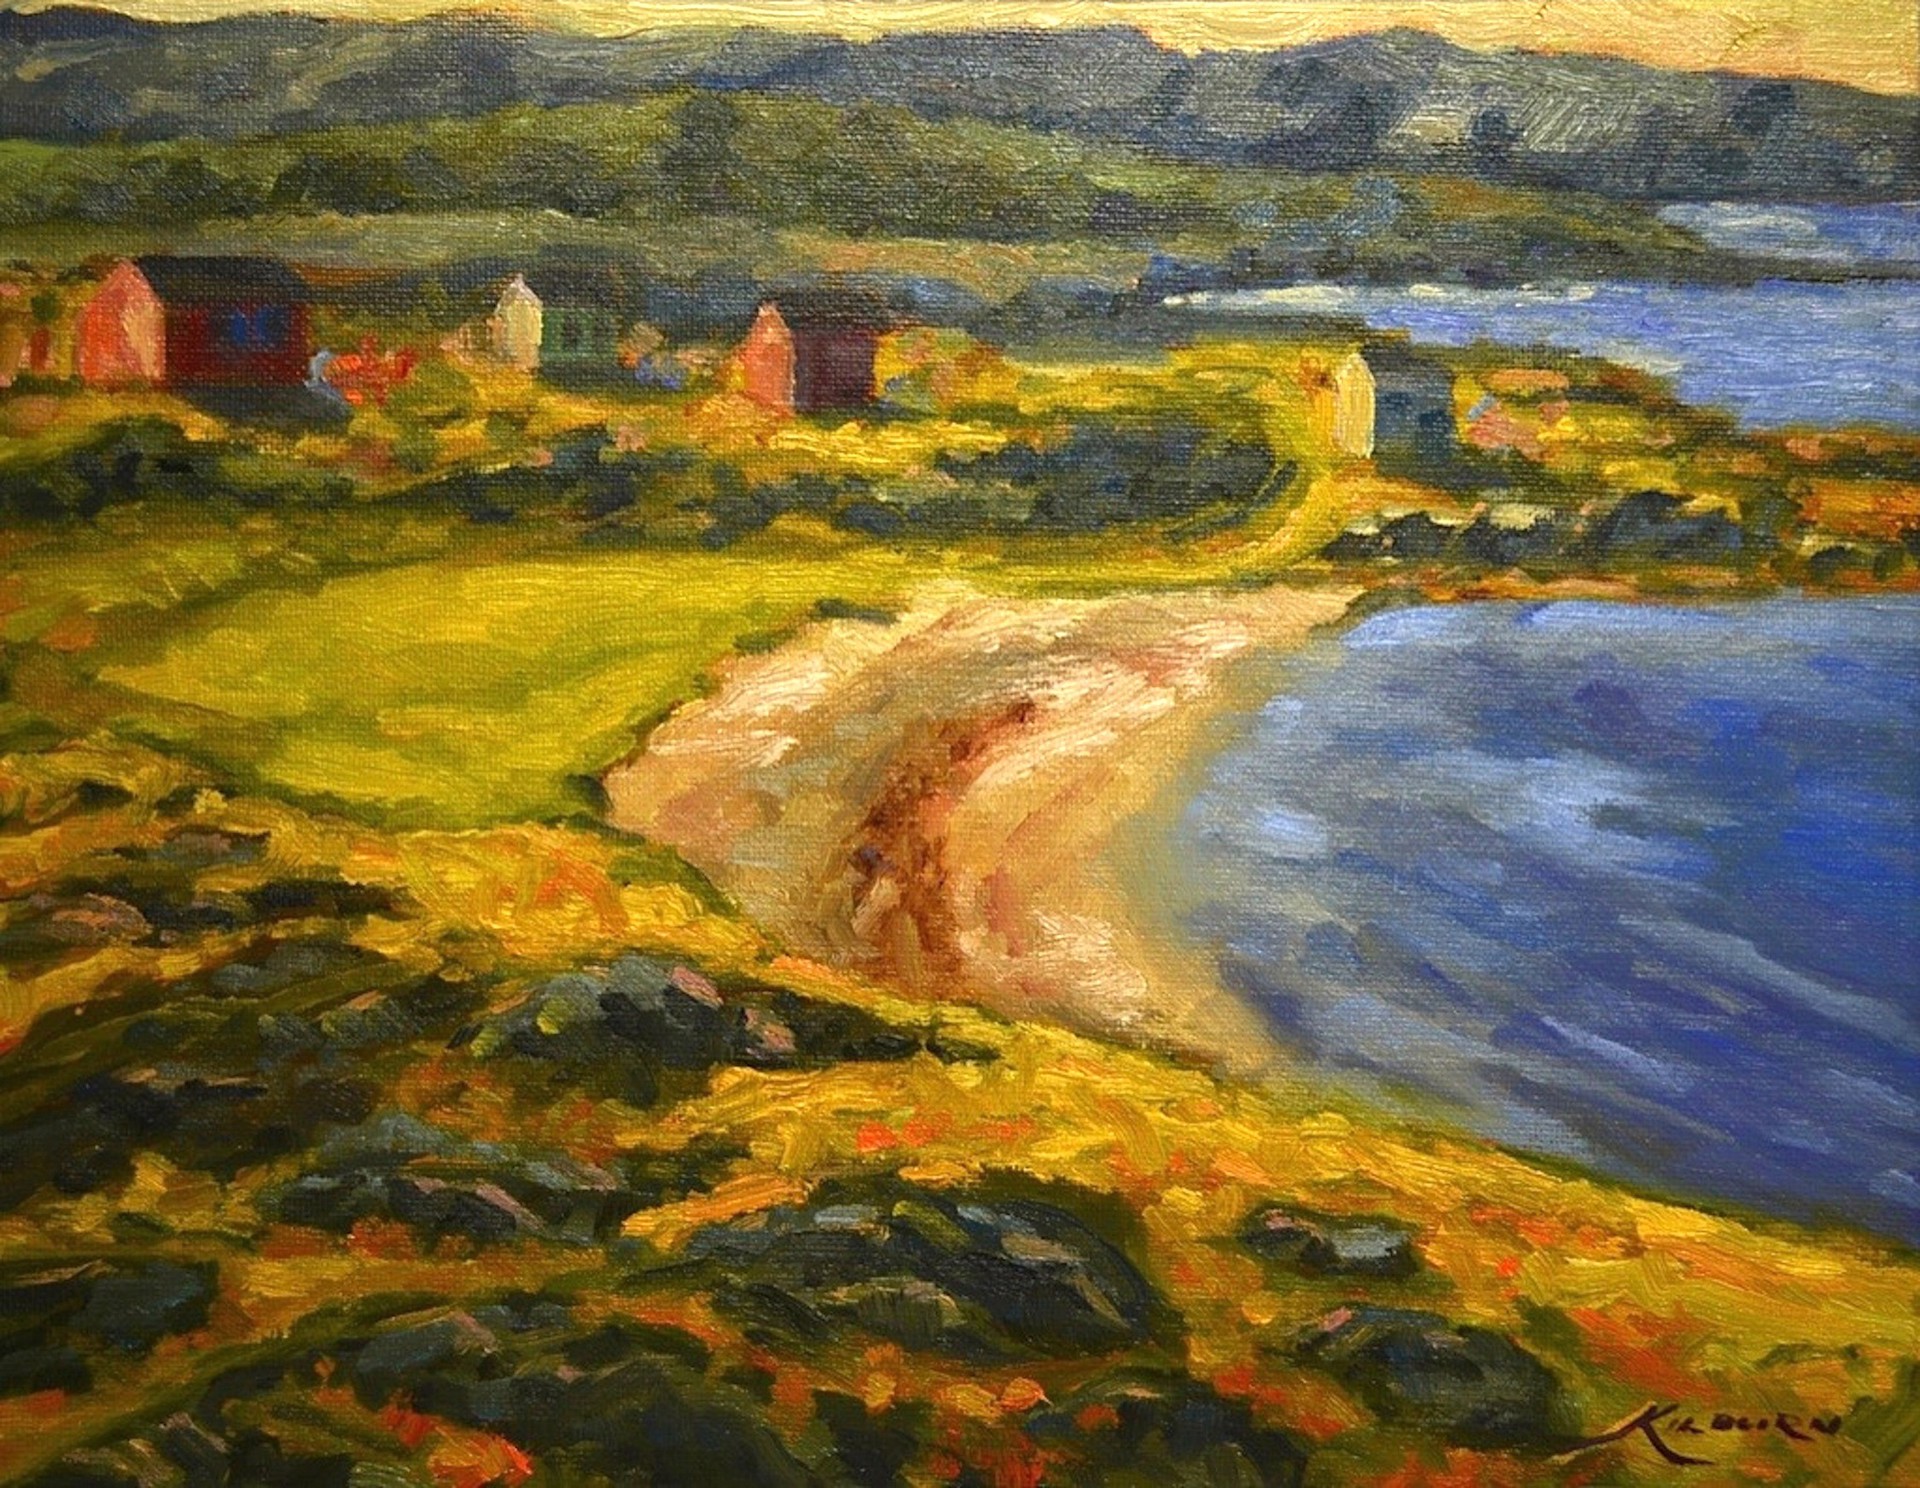 Keels Cove by Michael Kilburn